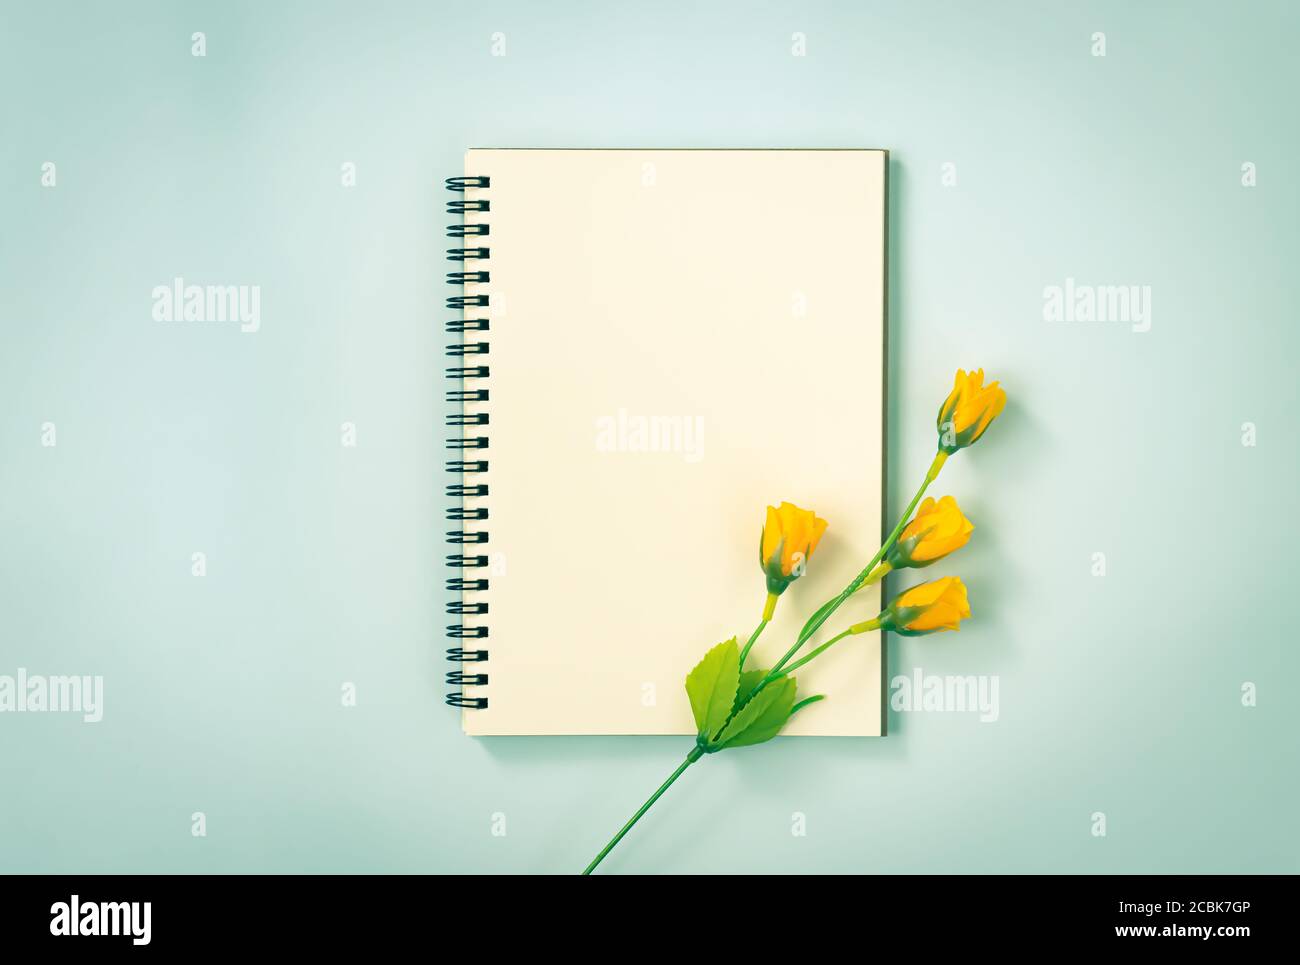 Spiral Notizbuch oder Spring Notizbuch in Unlined Type und 4 Orange Blumen unten rechts auf blauem Pastell minimalistischem Hintergrund. Spiral Notebook Mockup o Stockfoto